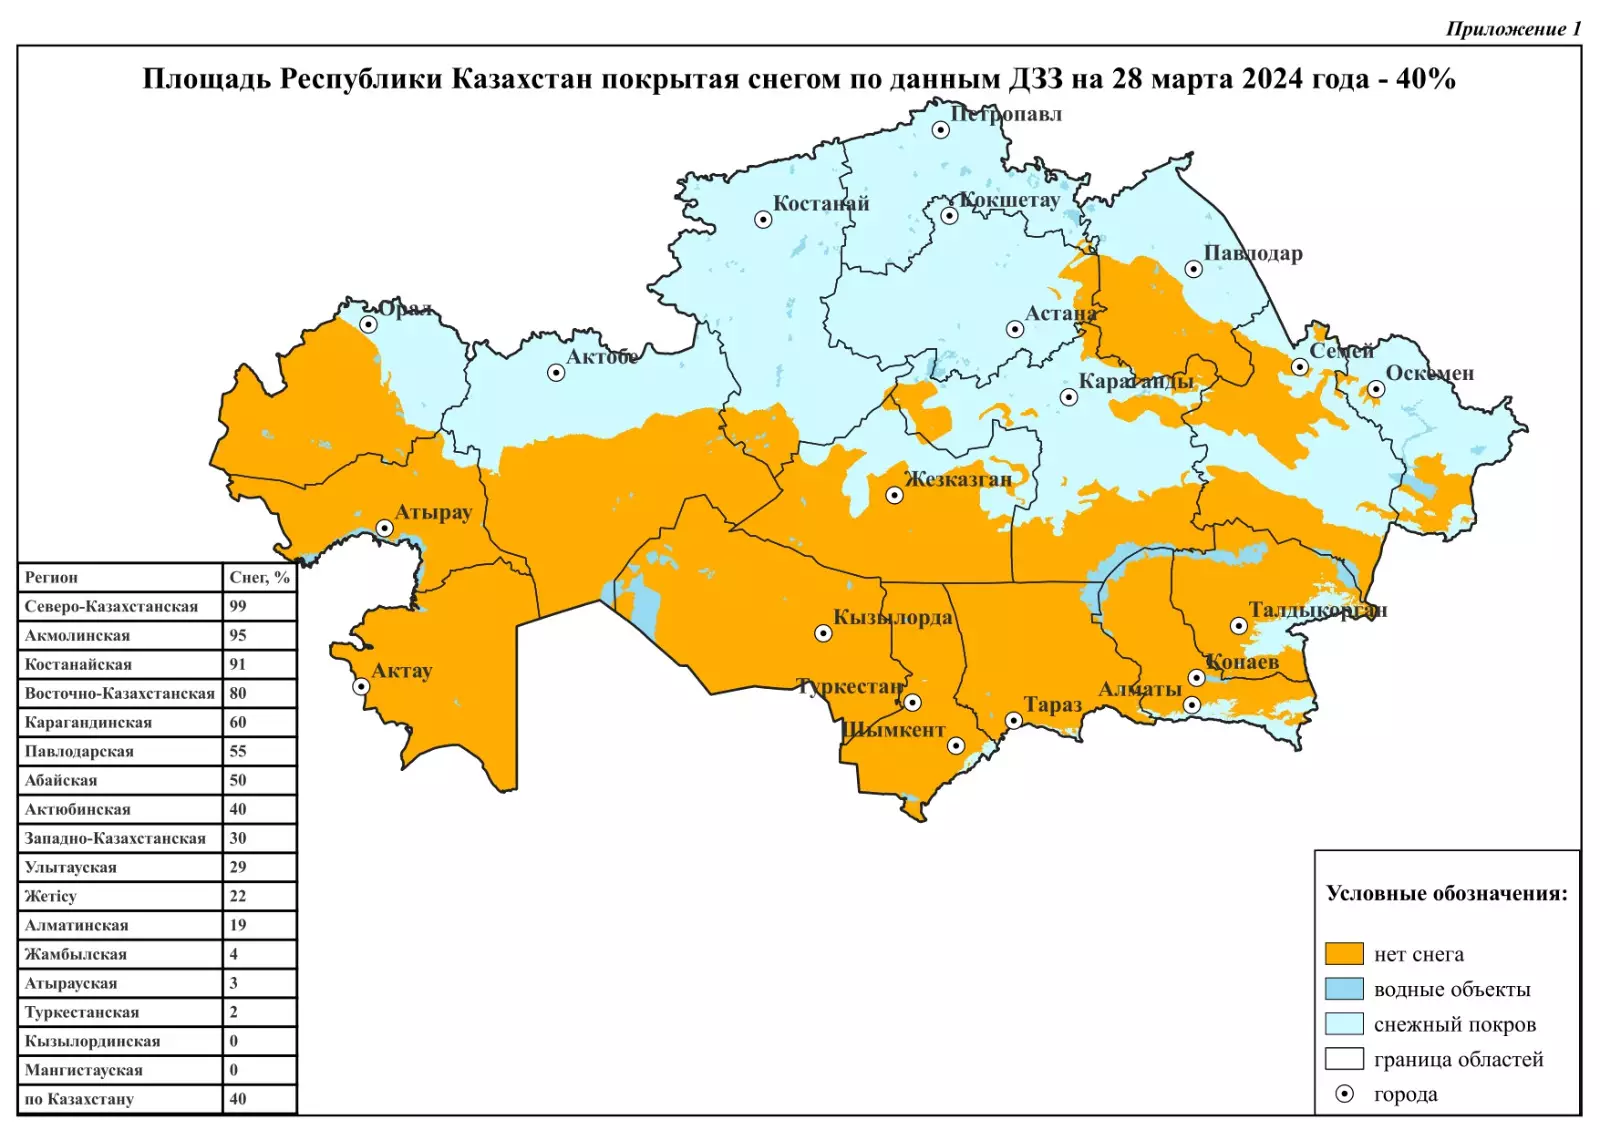 Еще треть территории Казахстана покрыта снегом, - синоптики